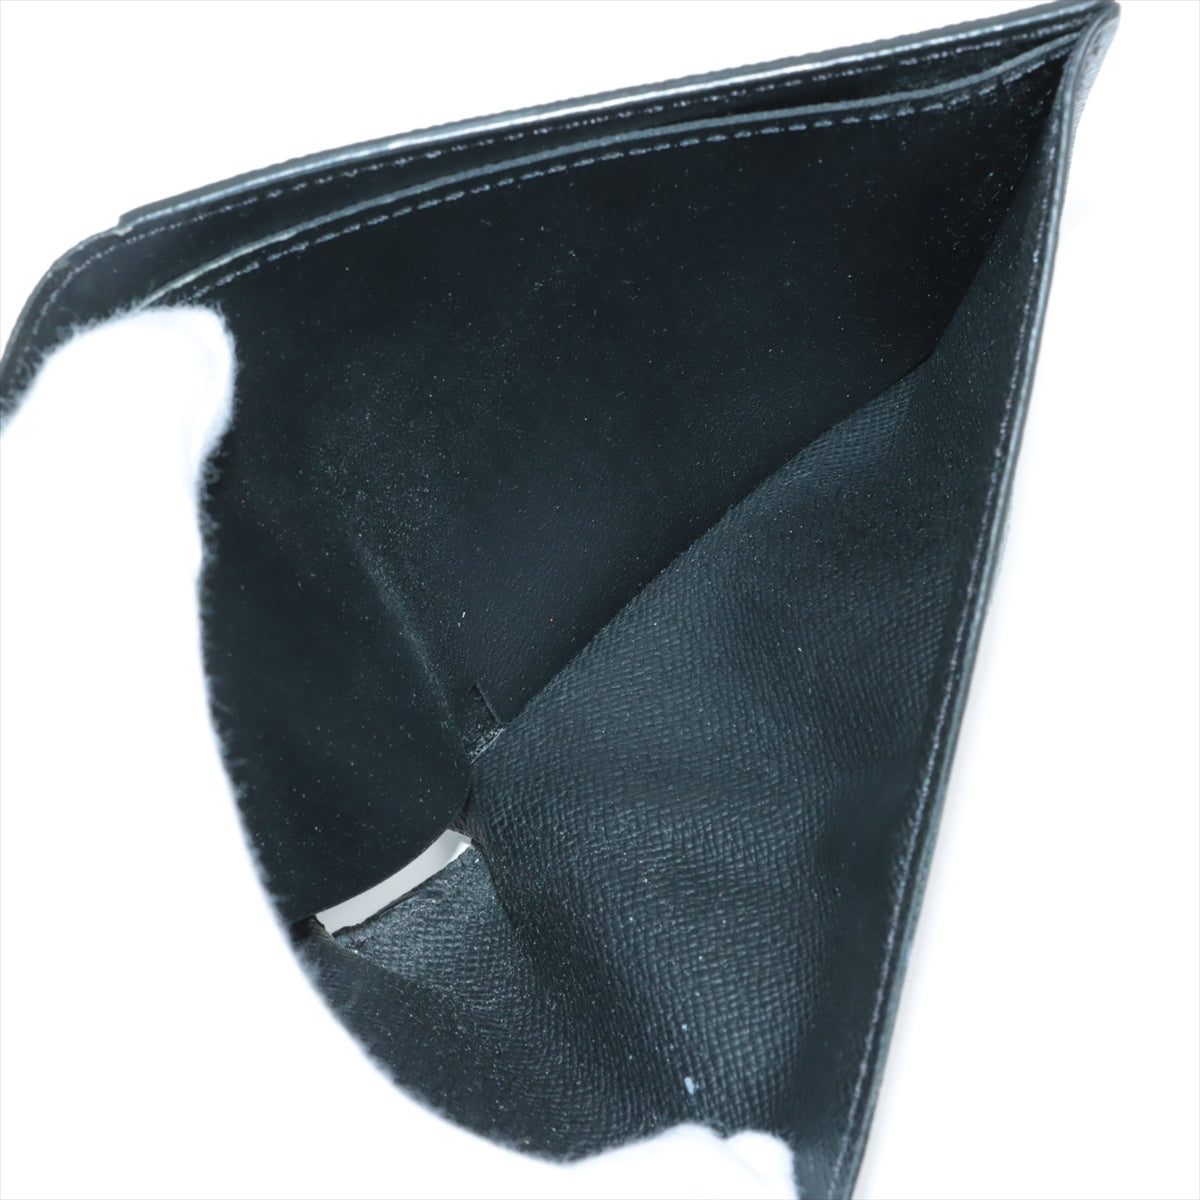 Louis Vuitton Monogram Eclipse Portefeuille Marco NM M62545 Black Compact Wallet